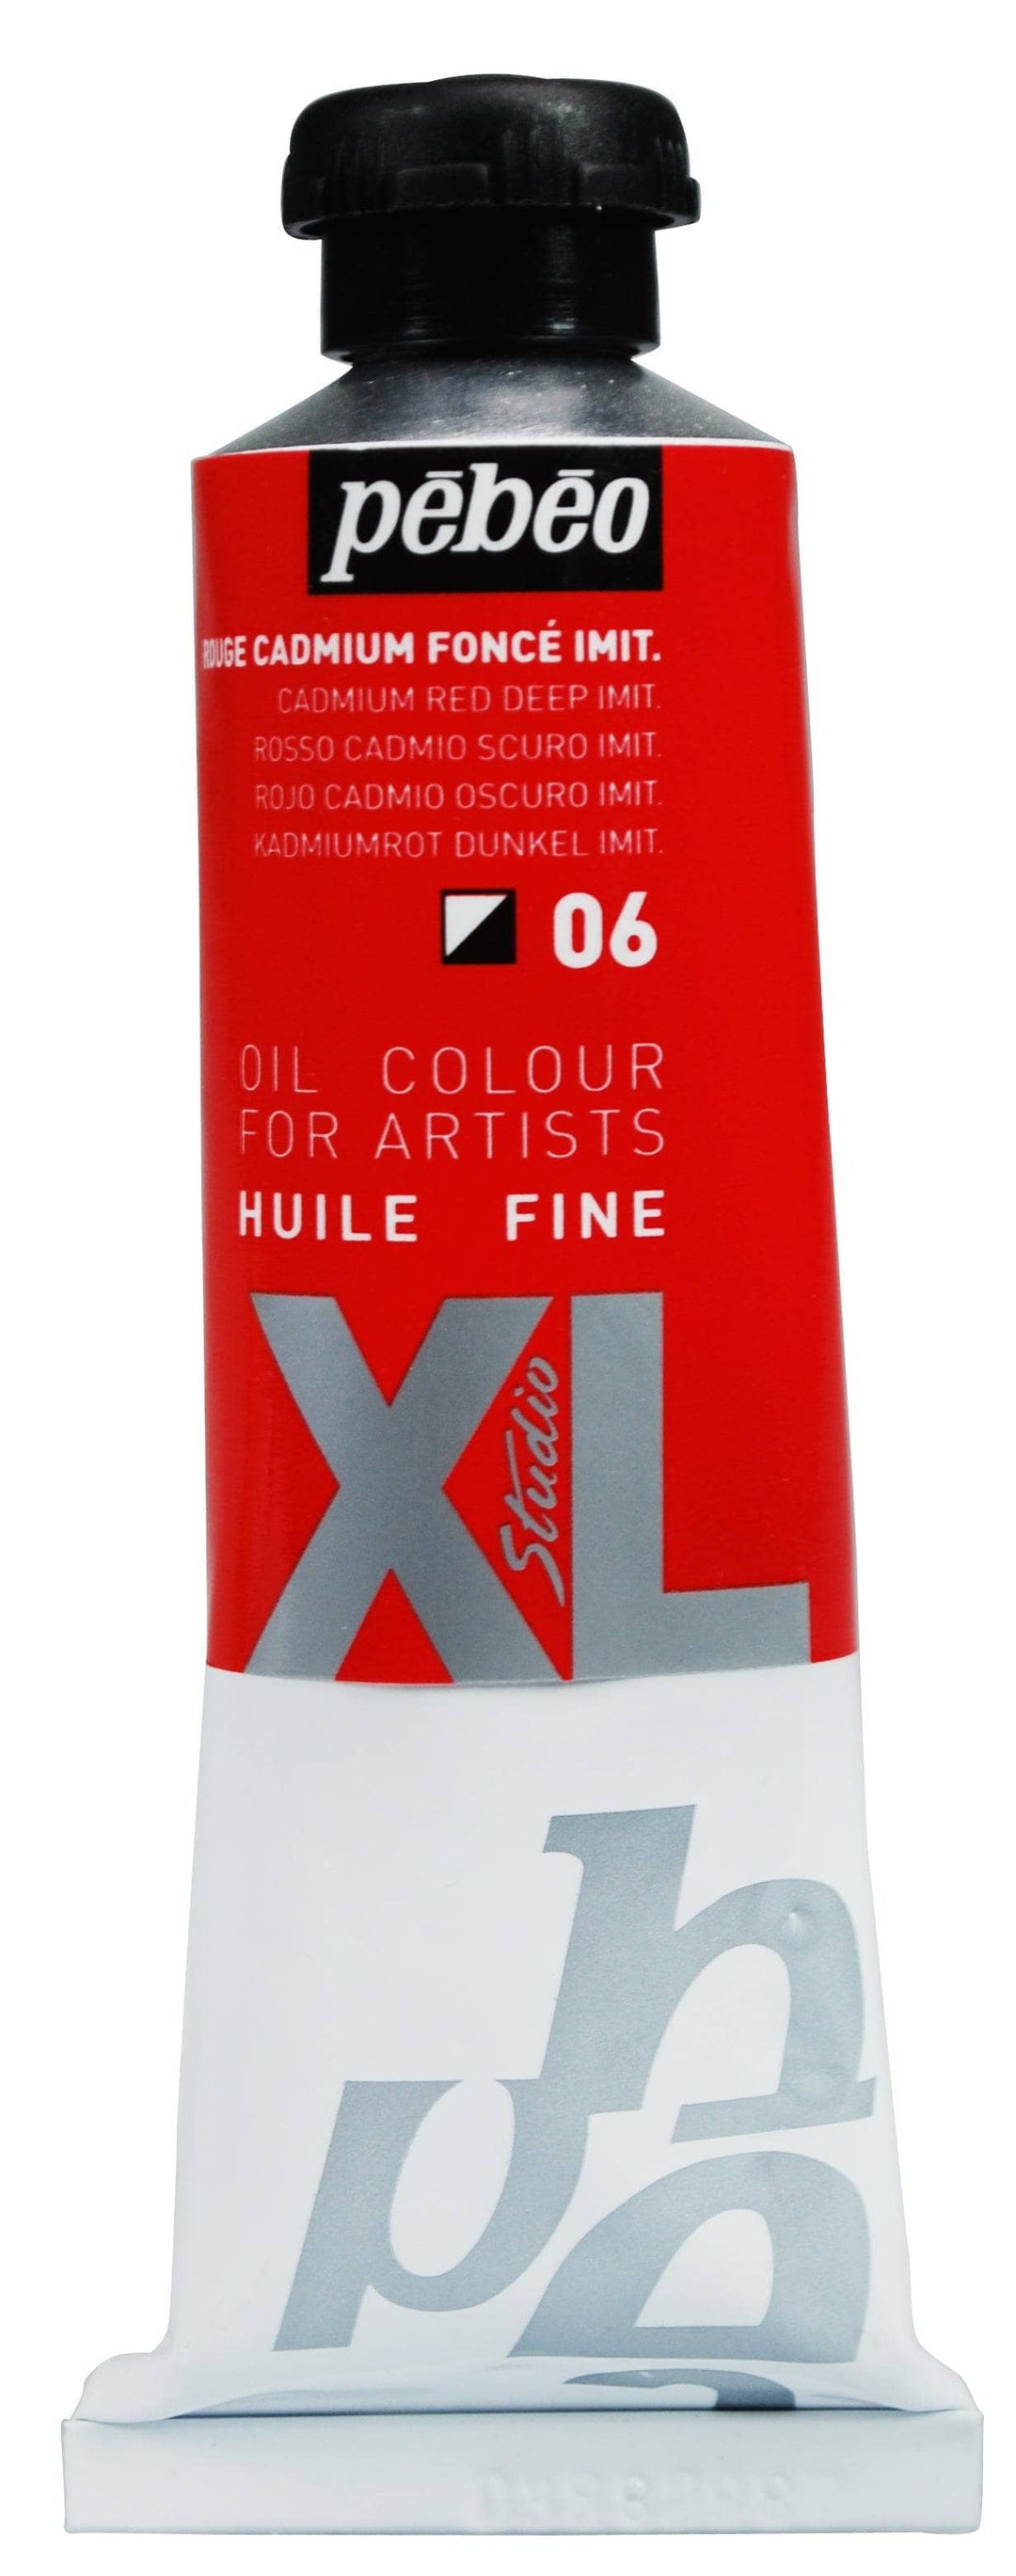 Huile fine Studio XL 37ml - Rouge Cadmium Foncé Imit.
PB937006